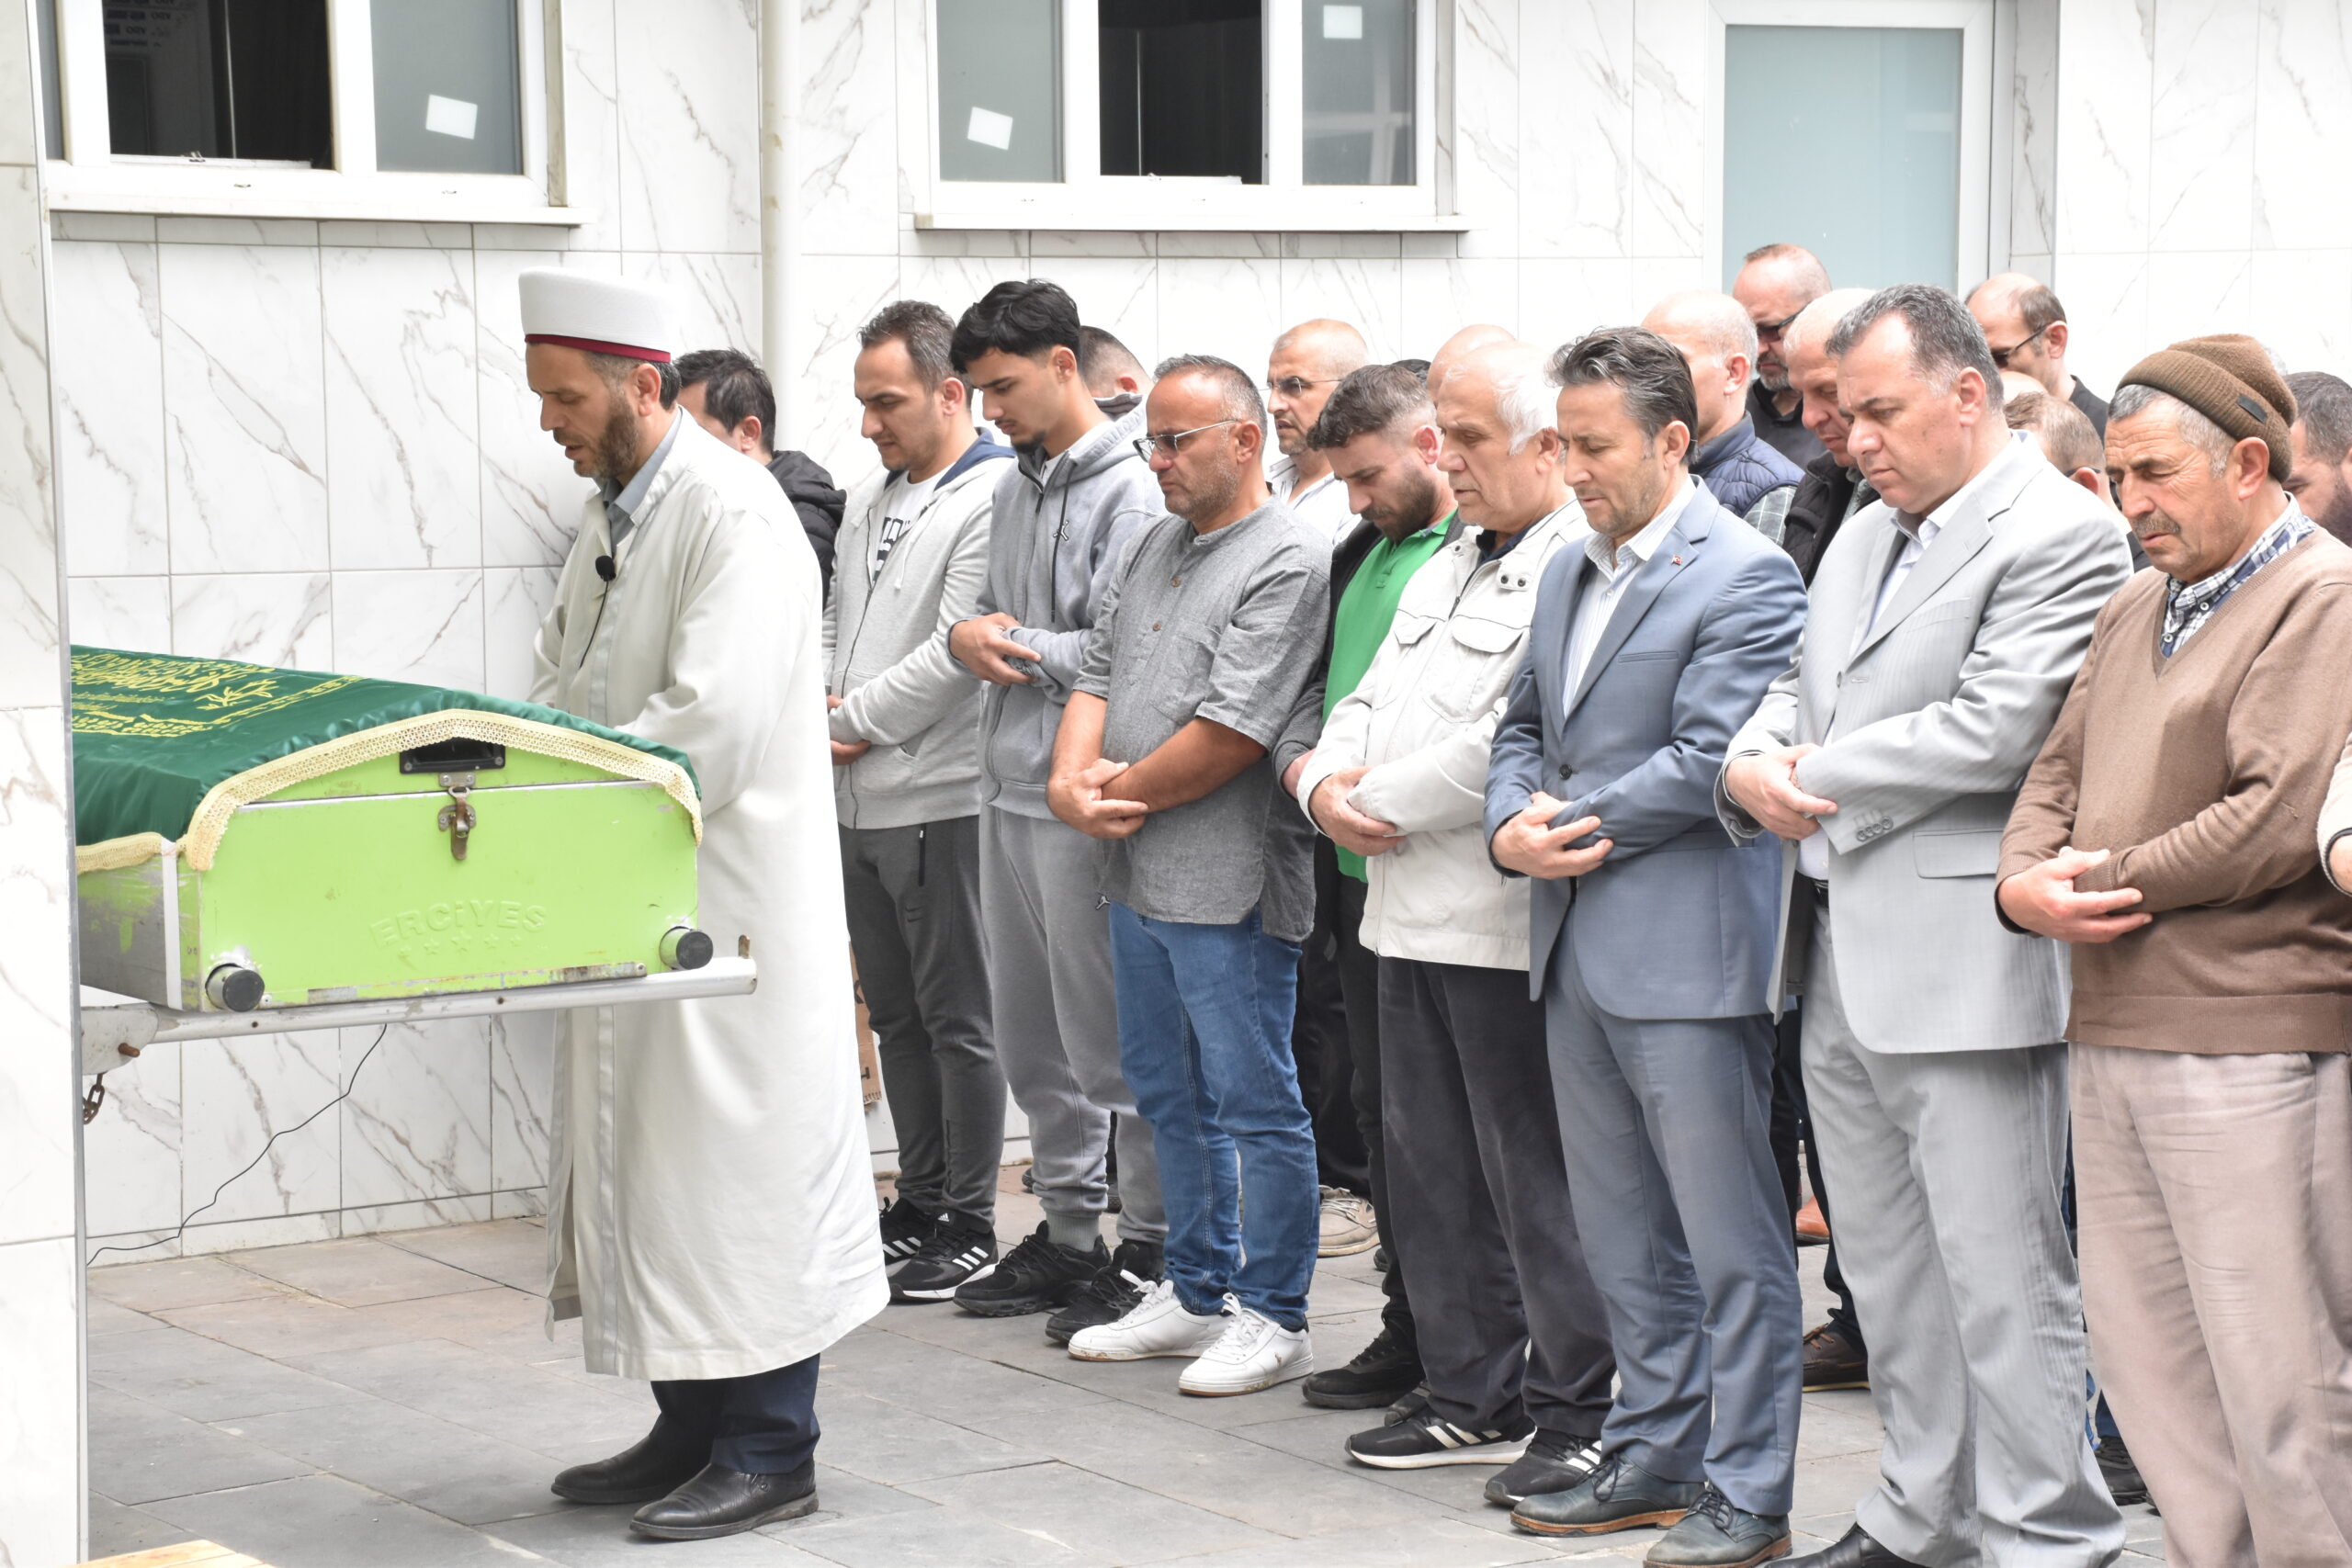 Belediye Başkanımız Hüseyin Kıyma ilçemiz halkından vefat eden Tevfik Çal’ın cenaze namazına katıldı, ailesine baş sağlığında bulundu.